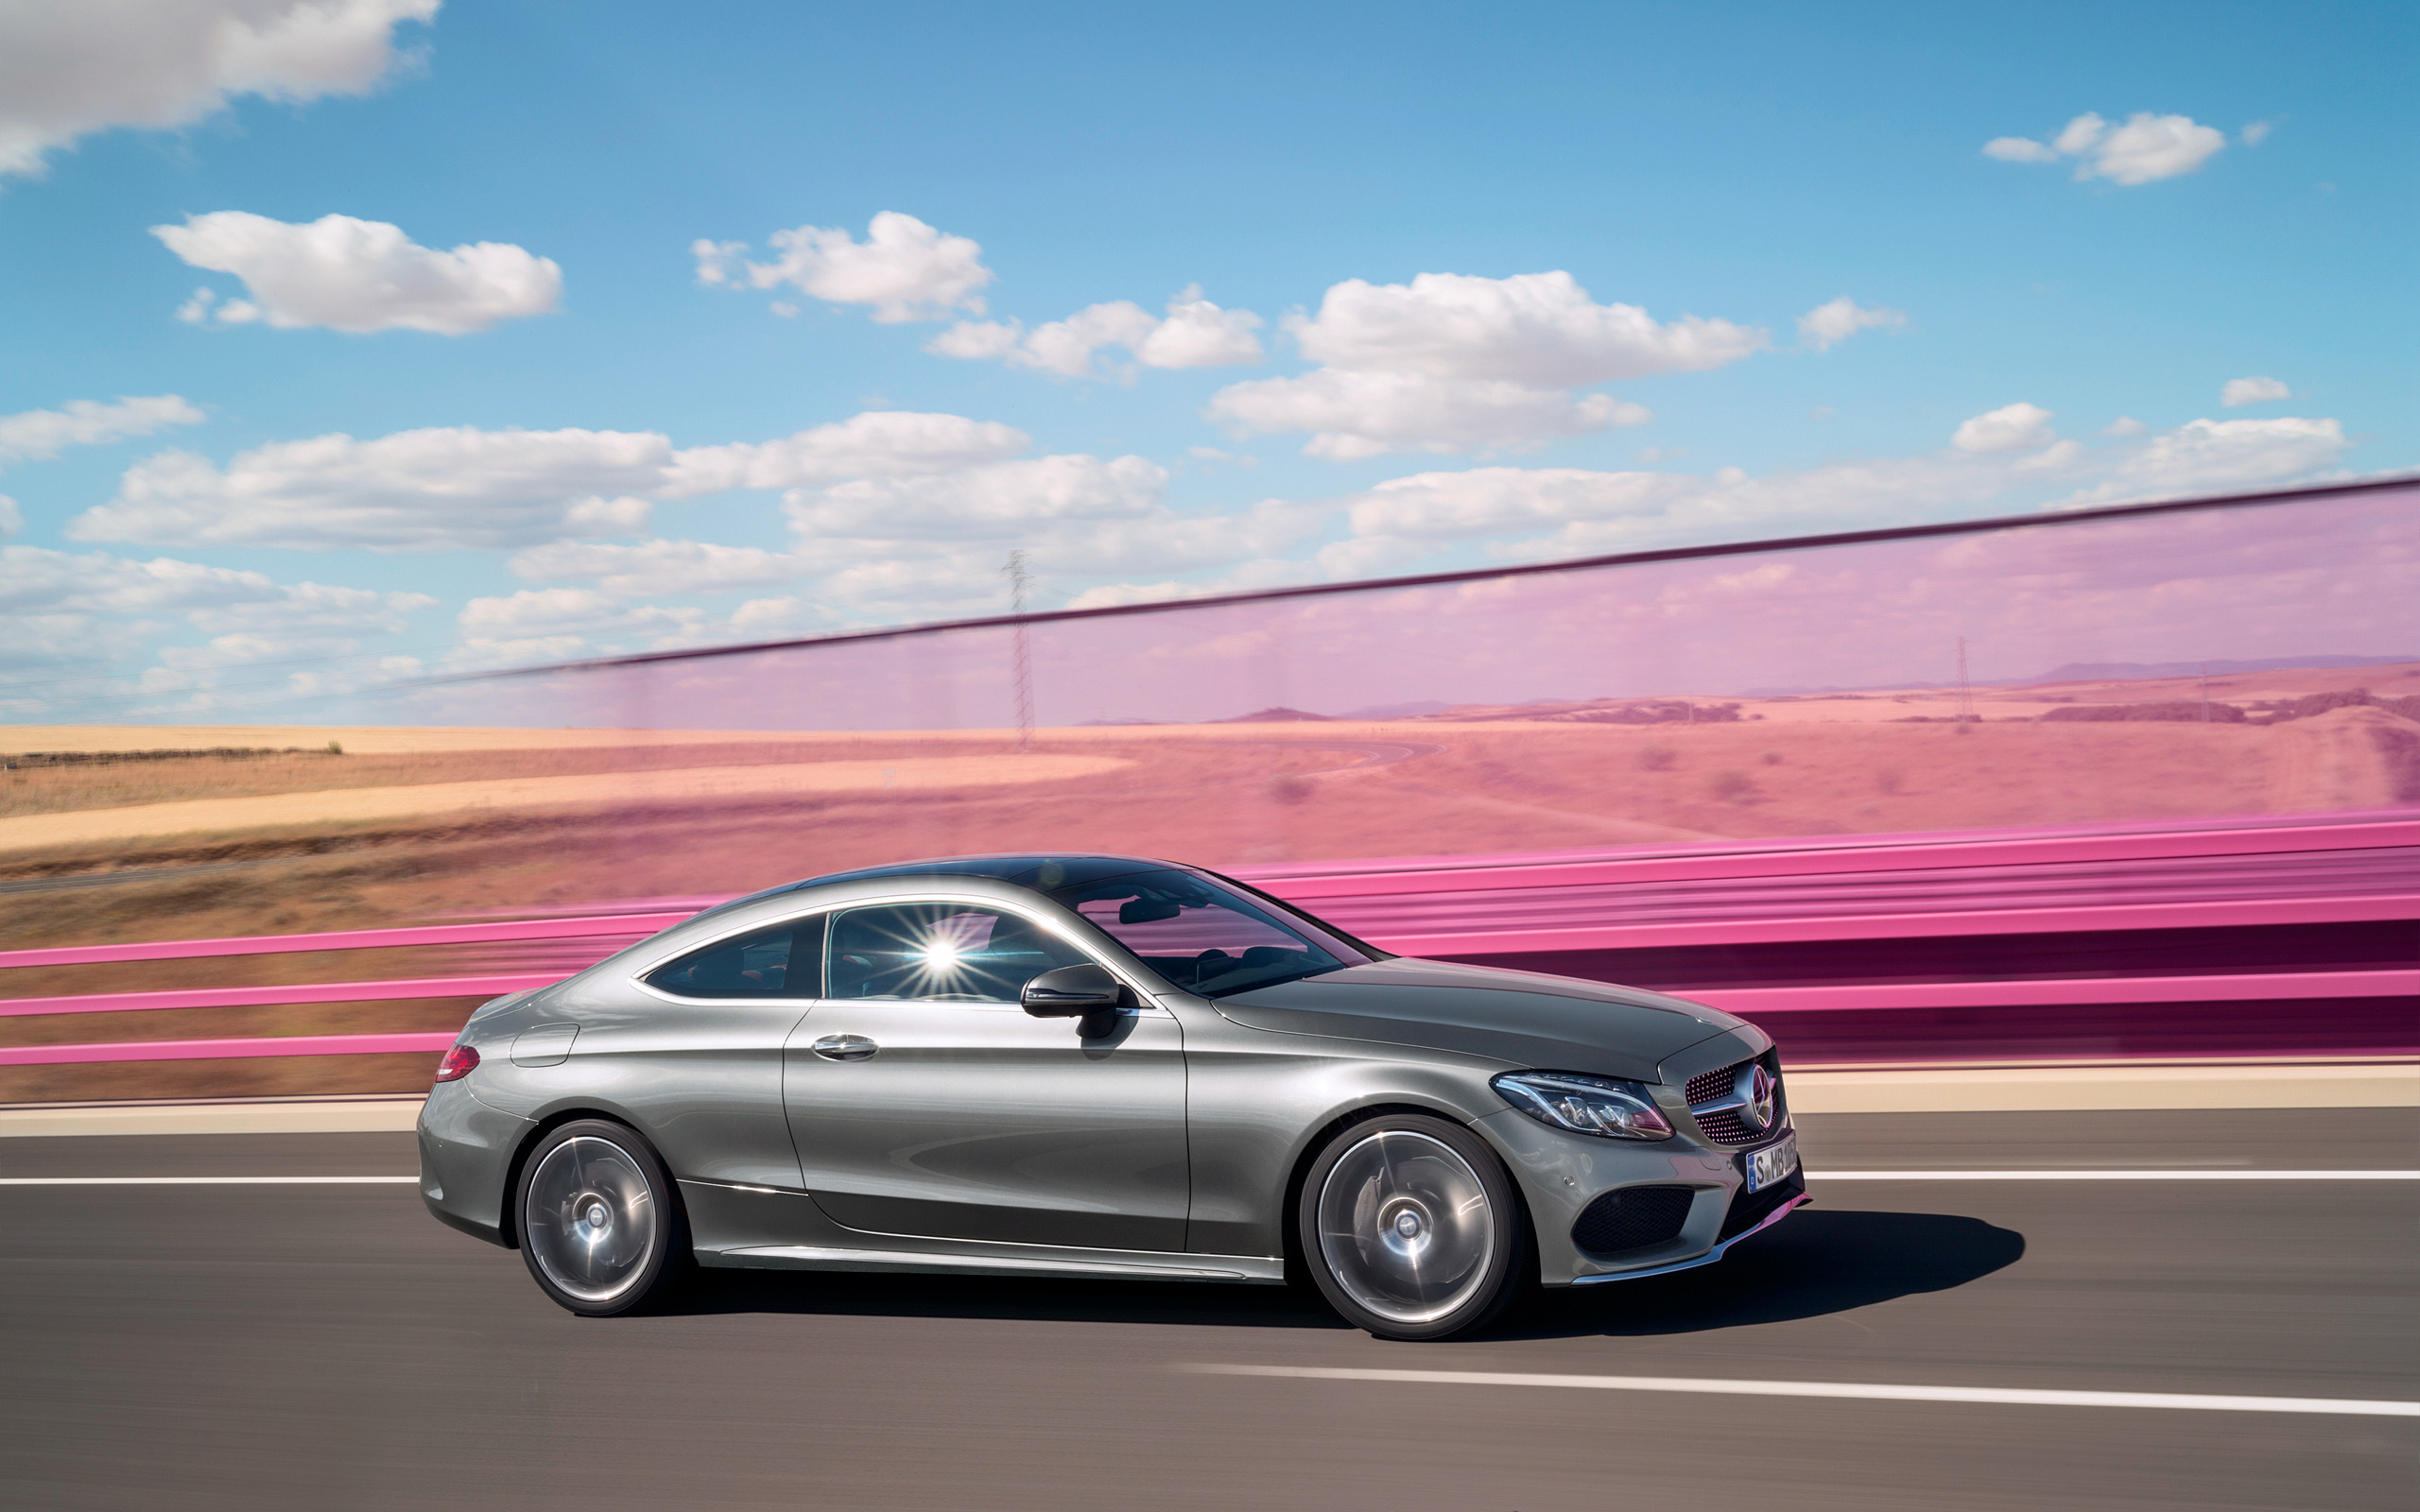 Mercedes-Benz C-Class, Coupe allure, Striking design, Sleek performance, 2560x1600 HD Desktop